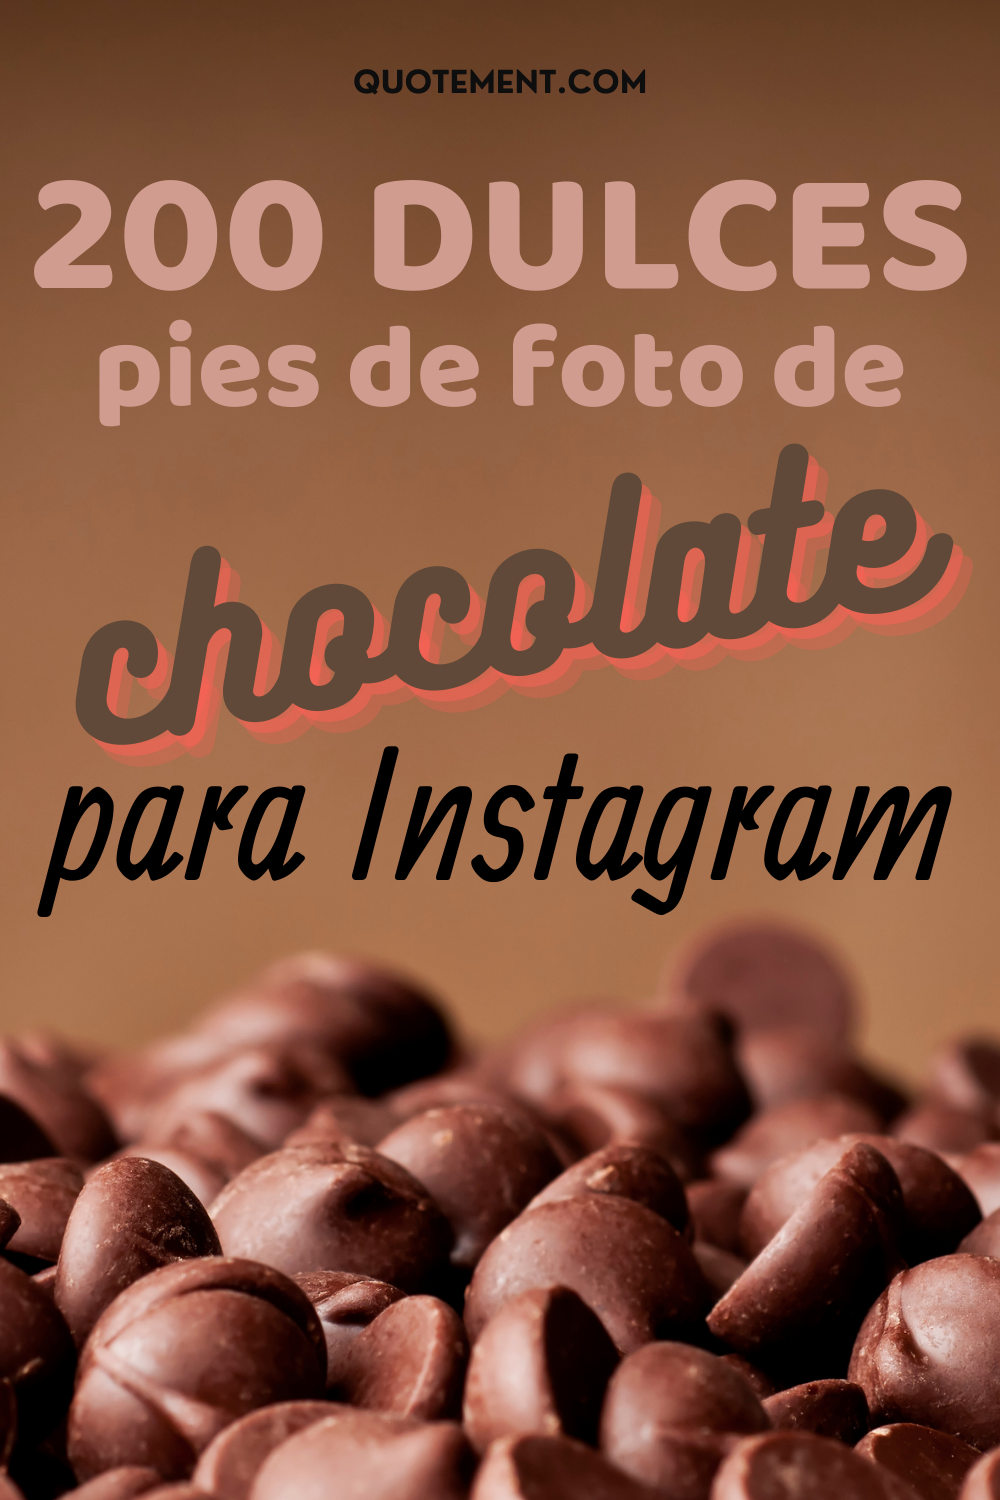 200 dulces pies de foto de chocolate para Instagram que te encantarán